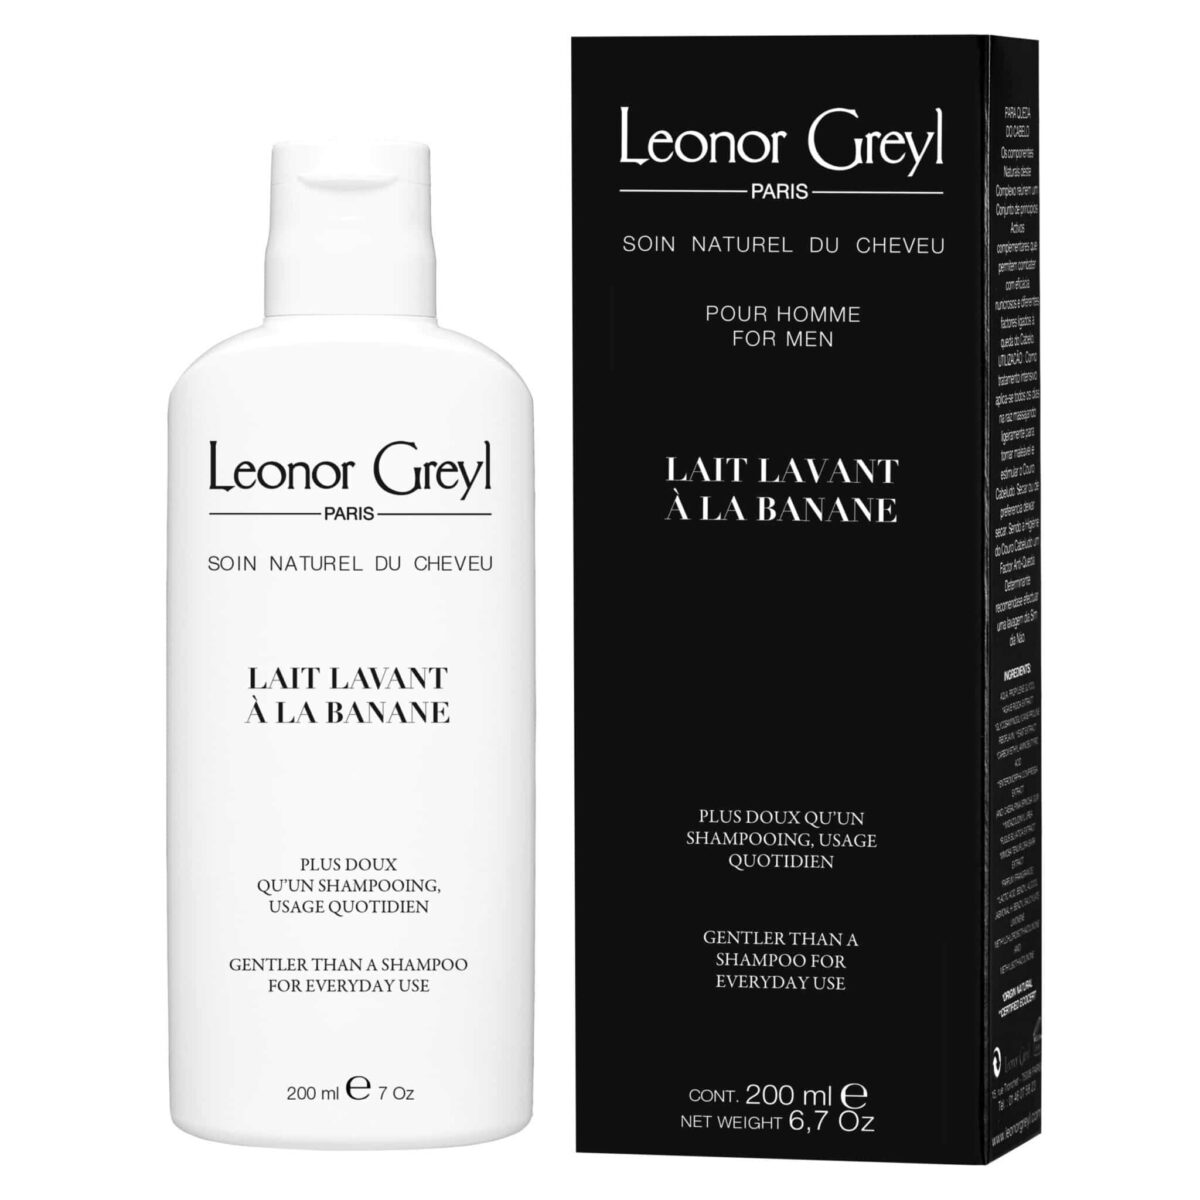 Leonor Greyl prirodni organski sampon mleko za svakodnevno pranje muske kose